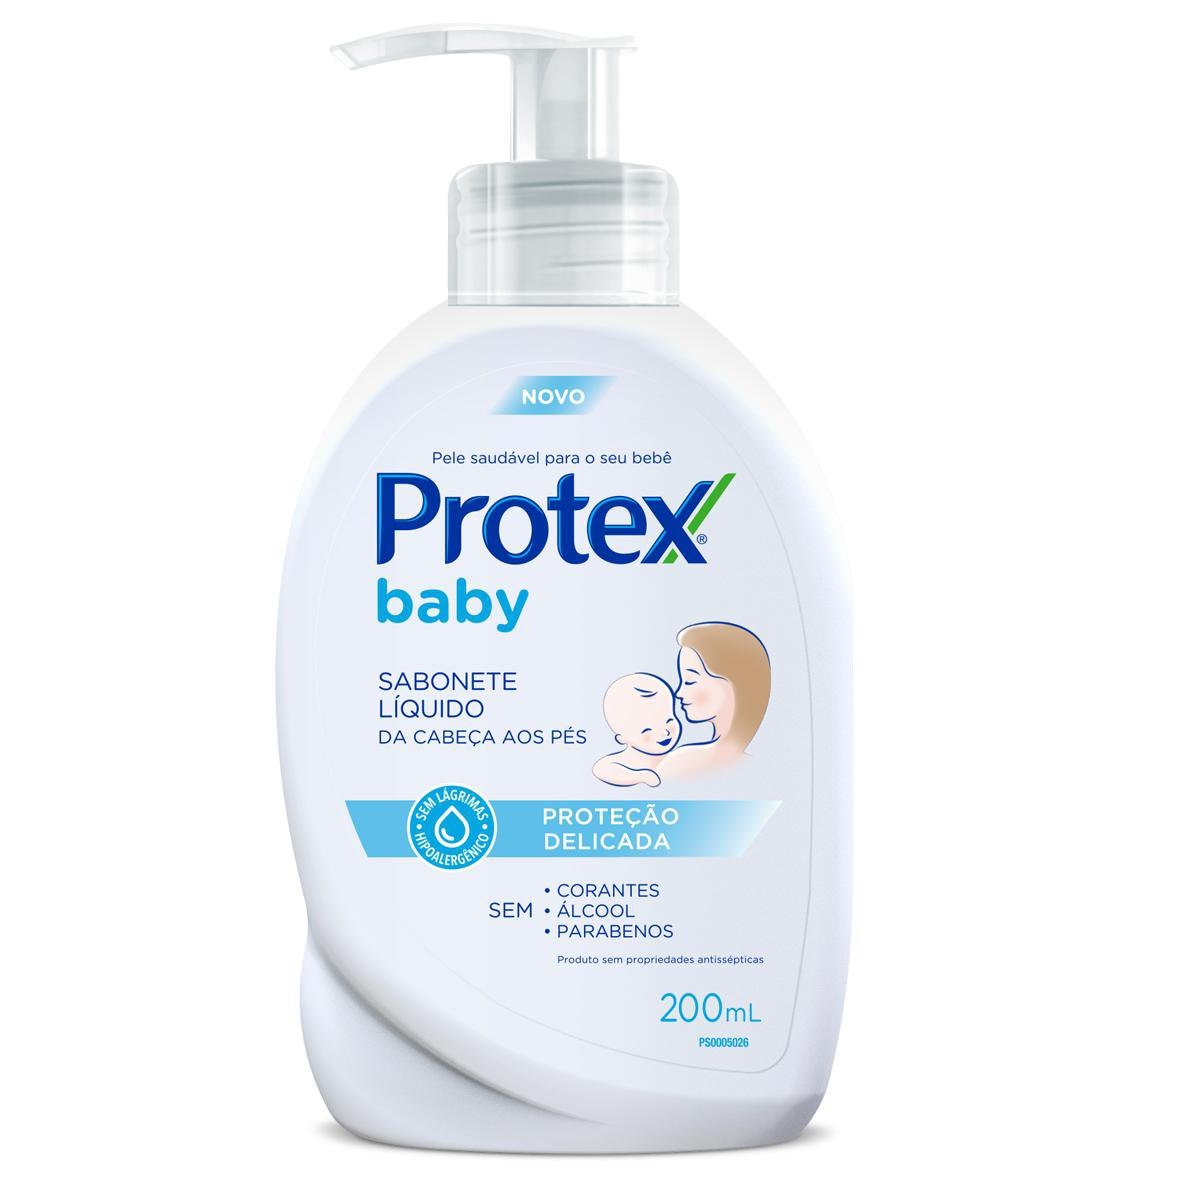 Sabonete Líquido Infantil Protex Baby Cabeça aos Pés com 200ml 200ml